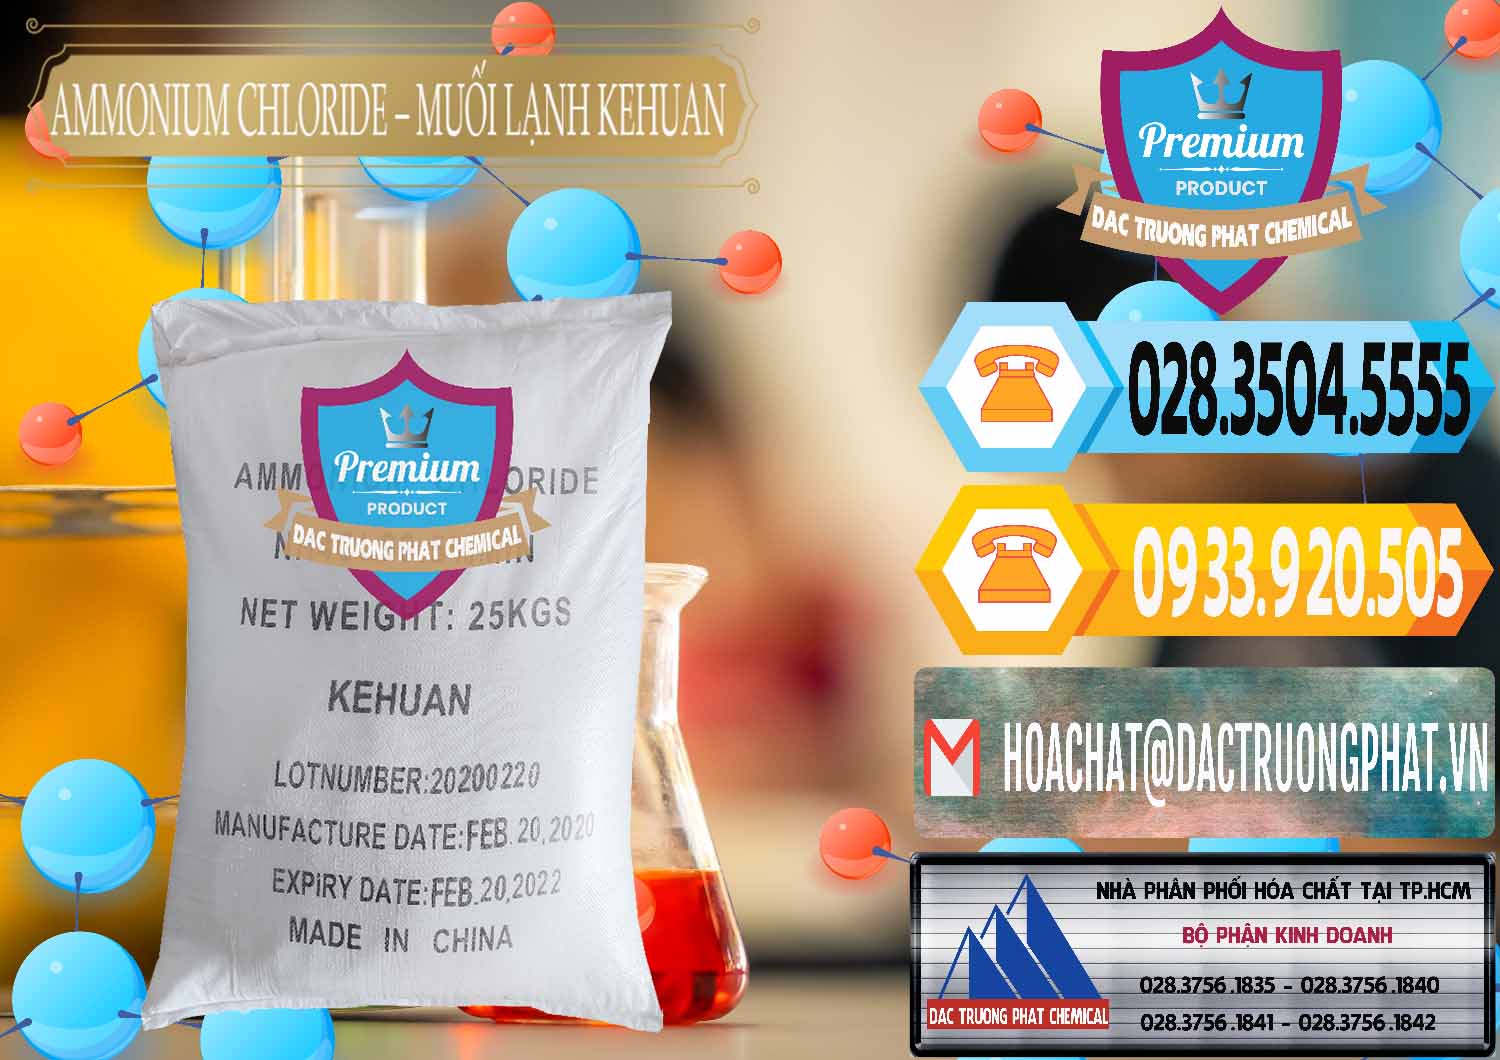 Cty chuyên bán & cung cấp Ammonium Chloride – NH4CL Muối Lạnh Kehuan Trung Quốc China - 0022 - Công ty phân phối - cung ứng hóa chất tại TP.HCM - hoachattayrua.net